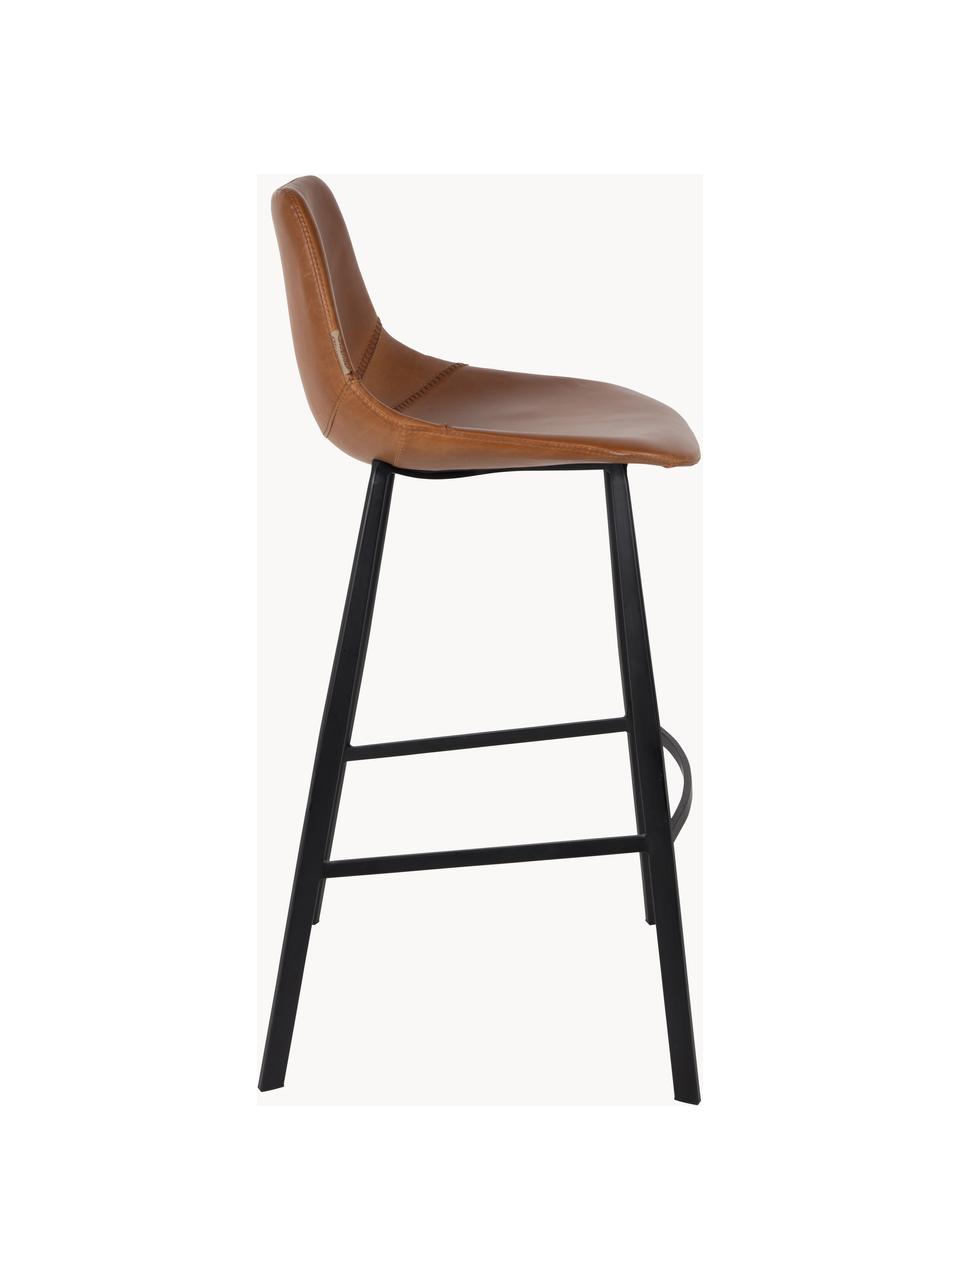 Barová židle z umělé kůže Franky, Imitace kůže hnědá, Š 50 cm, V 106 cm